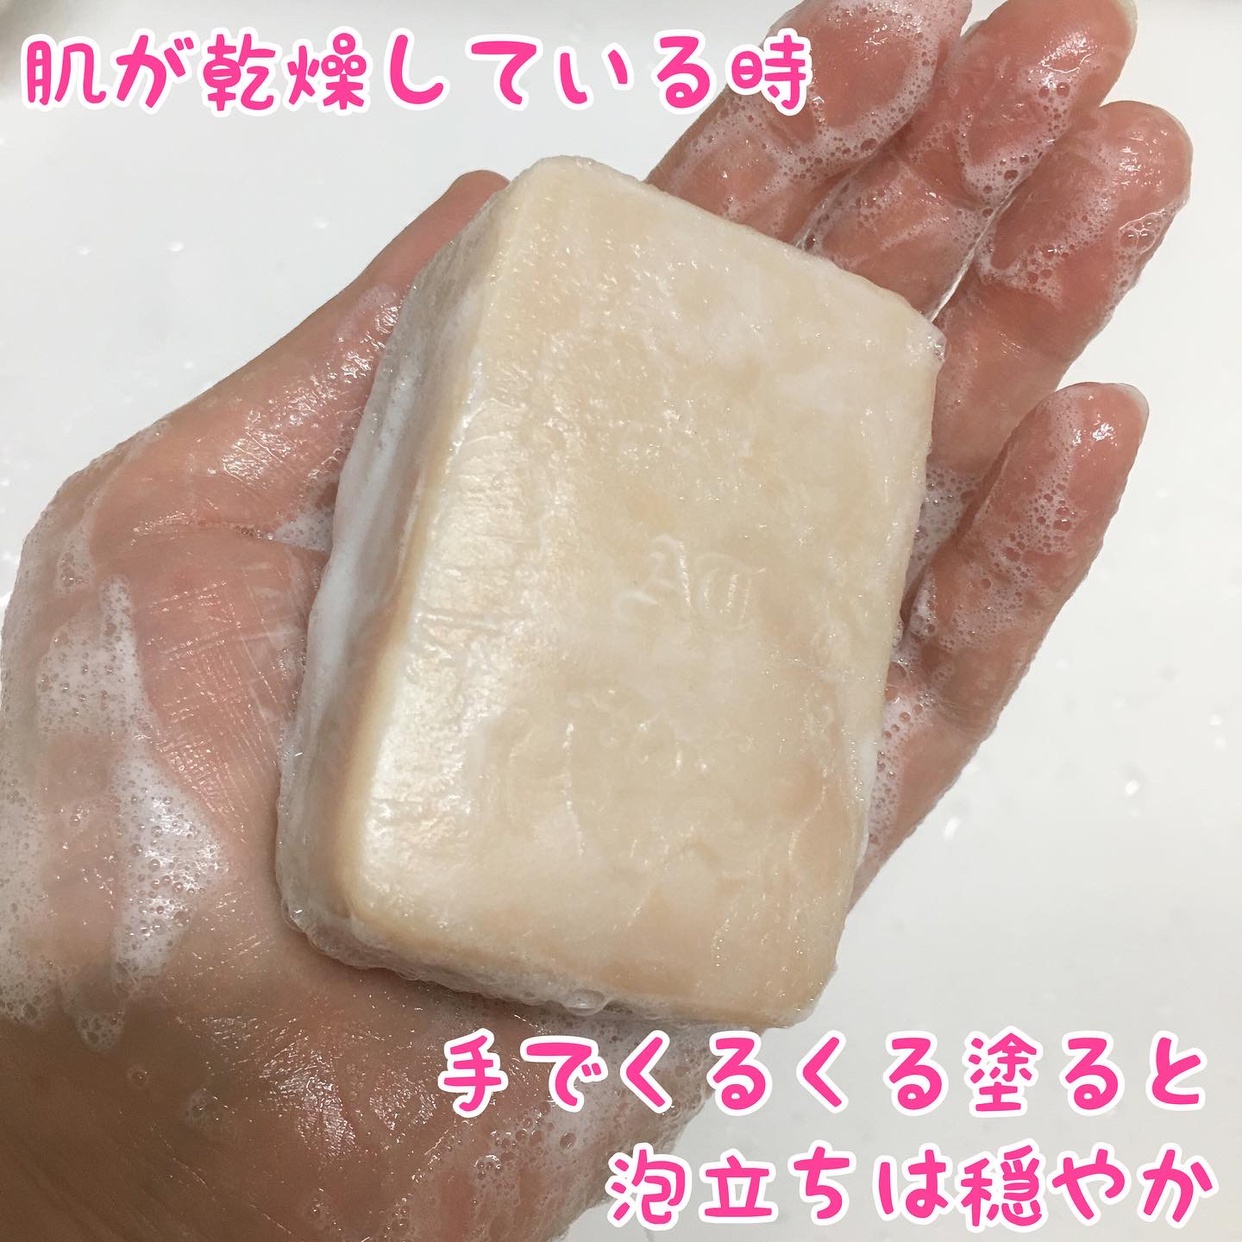 麗凍化粧品(Reitou Cosme) 薔薇はちみつ石鹸を使ったぶるどっくさんのクチコミ画像6